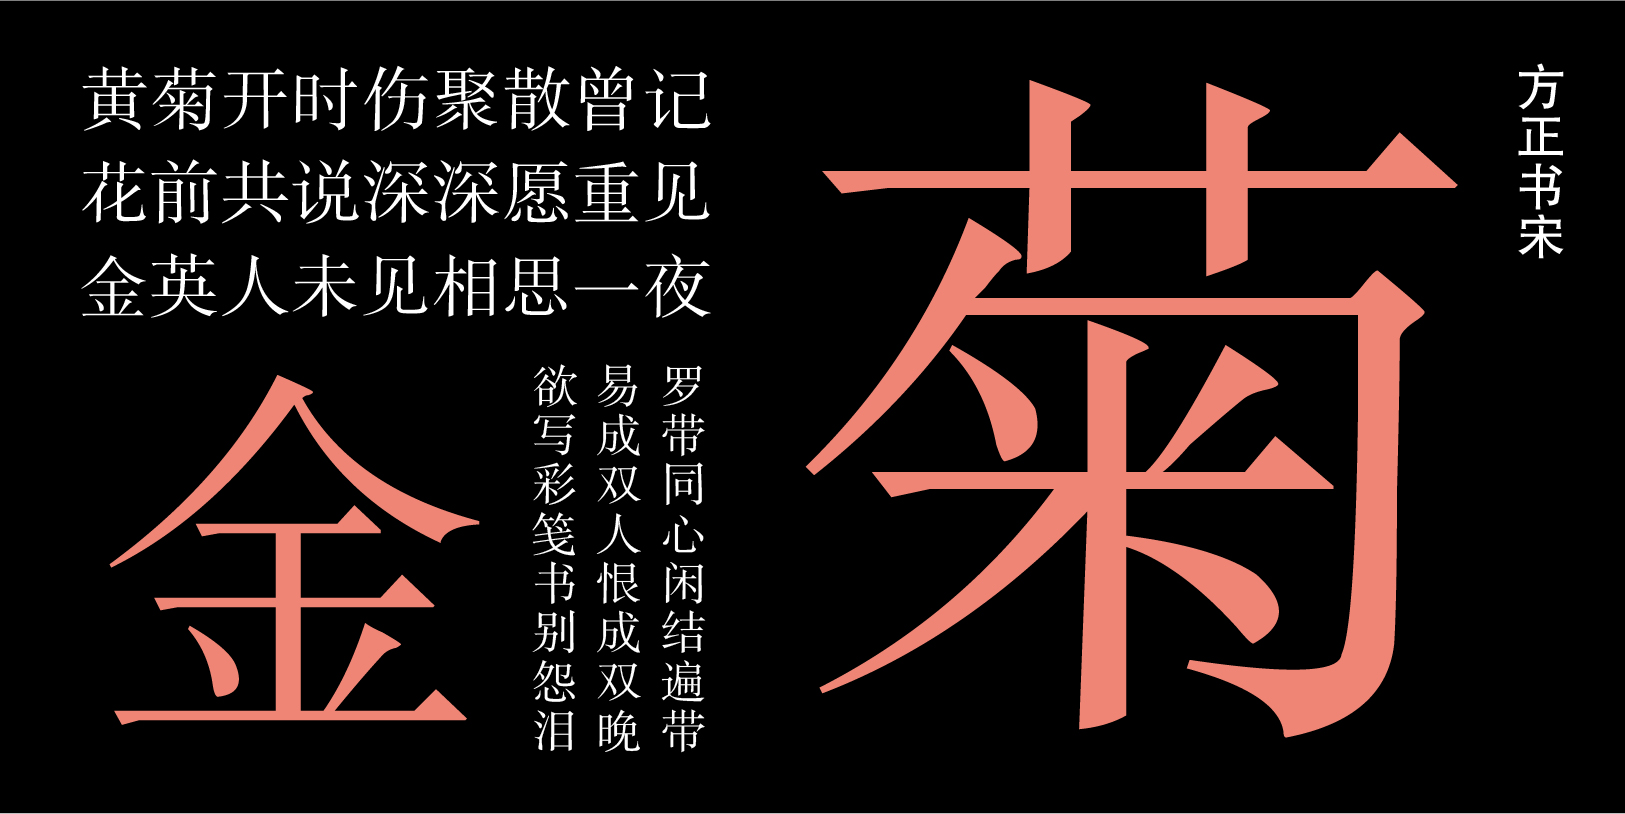 Card displaying Fāng Zhèng Shū Sòng typeface in various styles